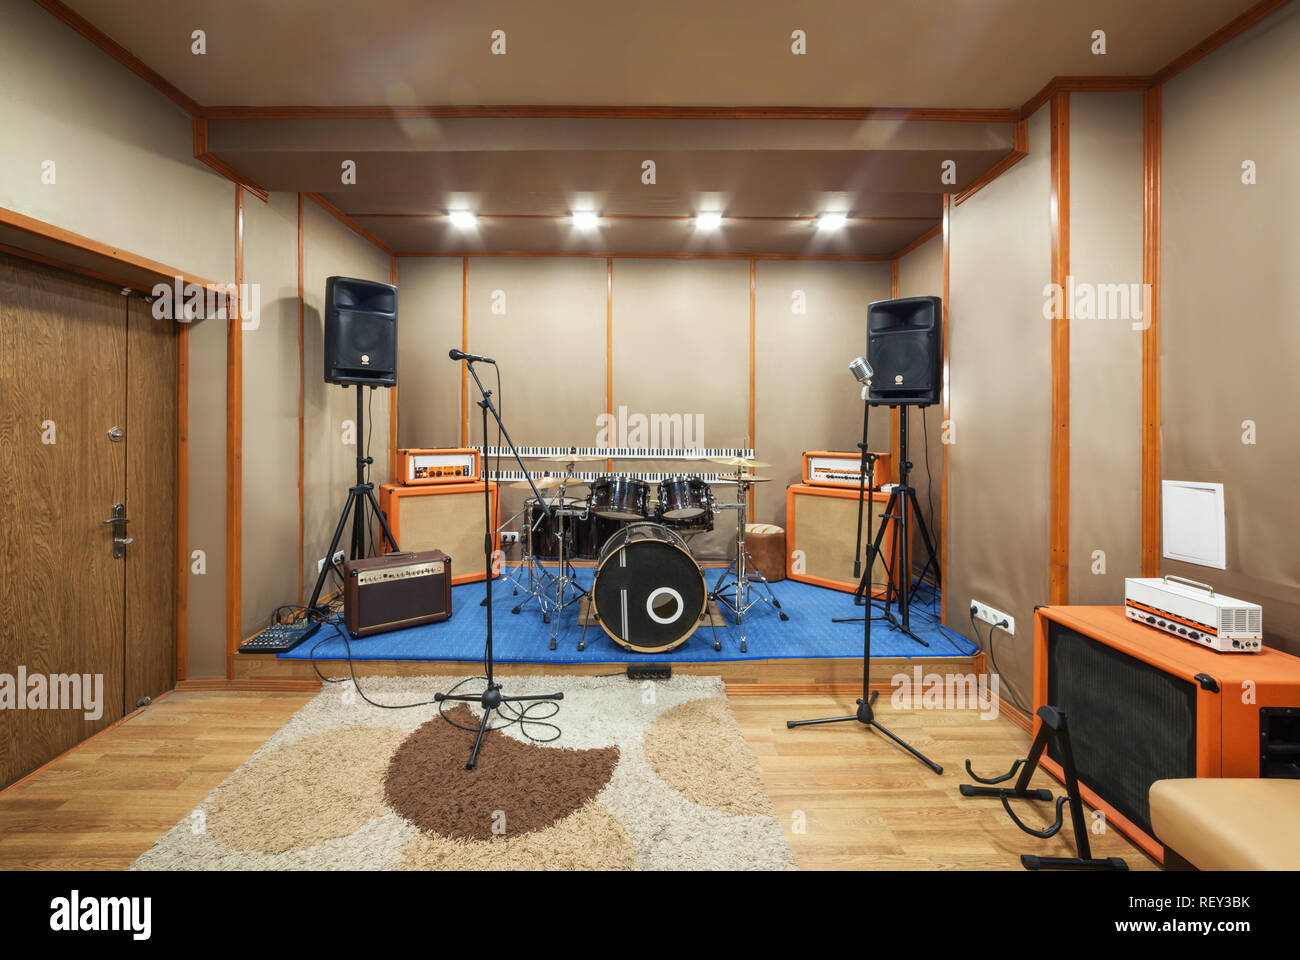 Musica spazio per prove con il drum kit e attrezzature musicali. Foto Stock